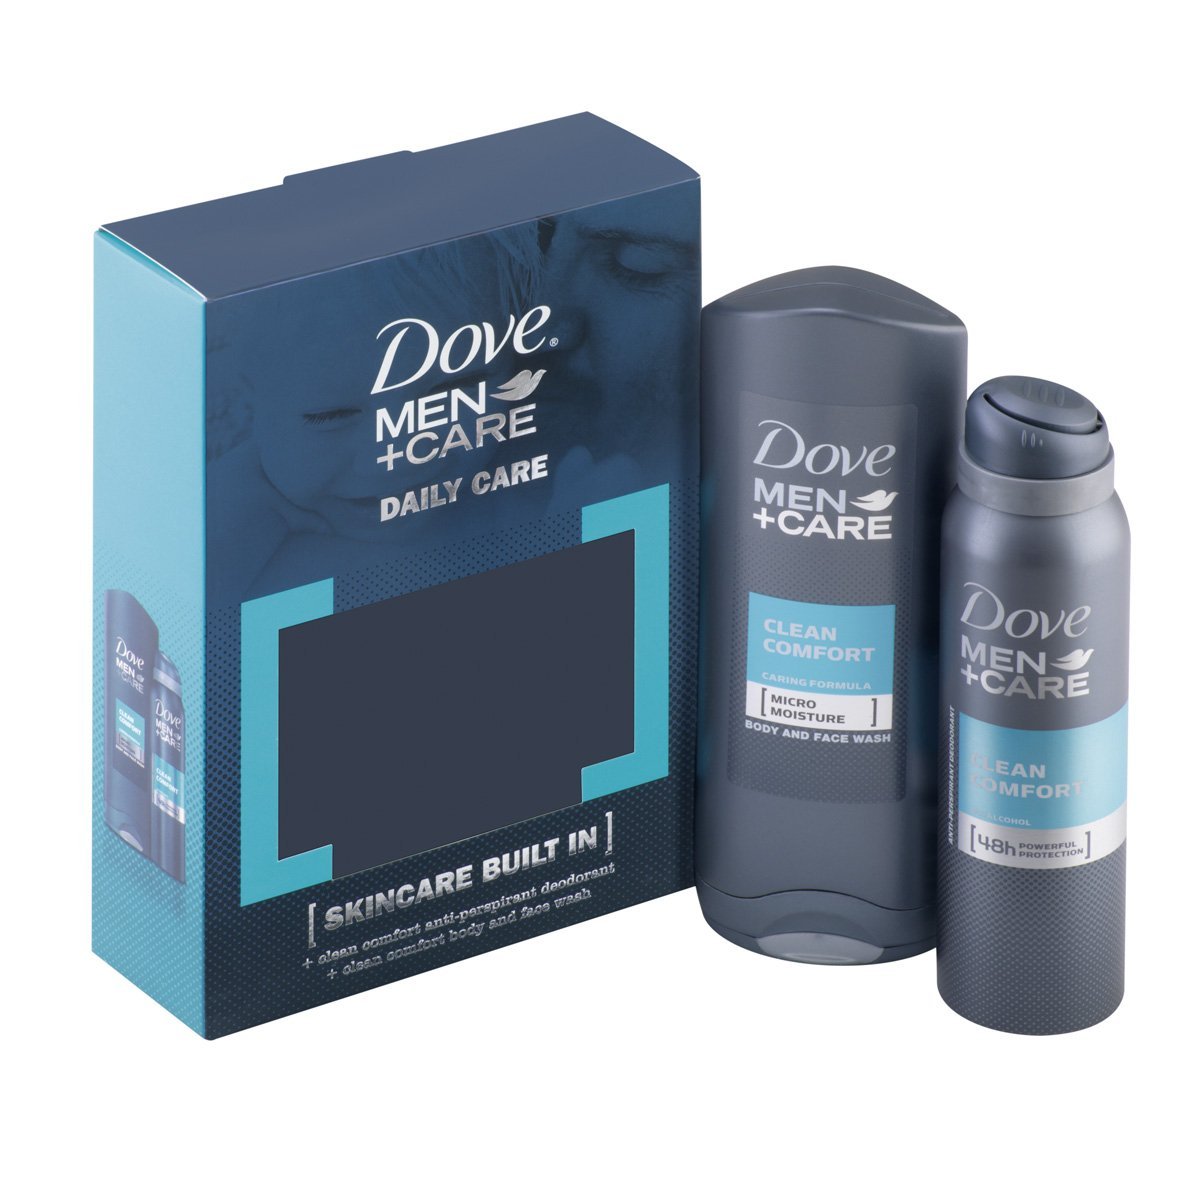 Dove Men Plus Care Clinical Deodorant